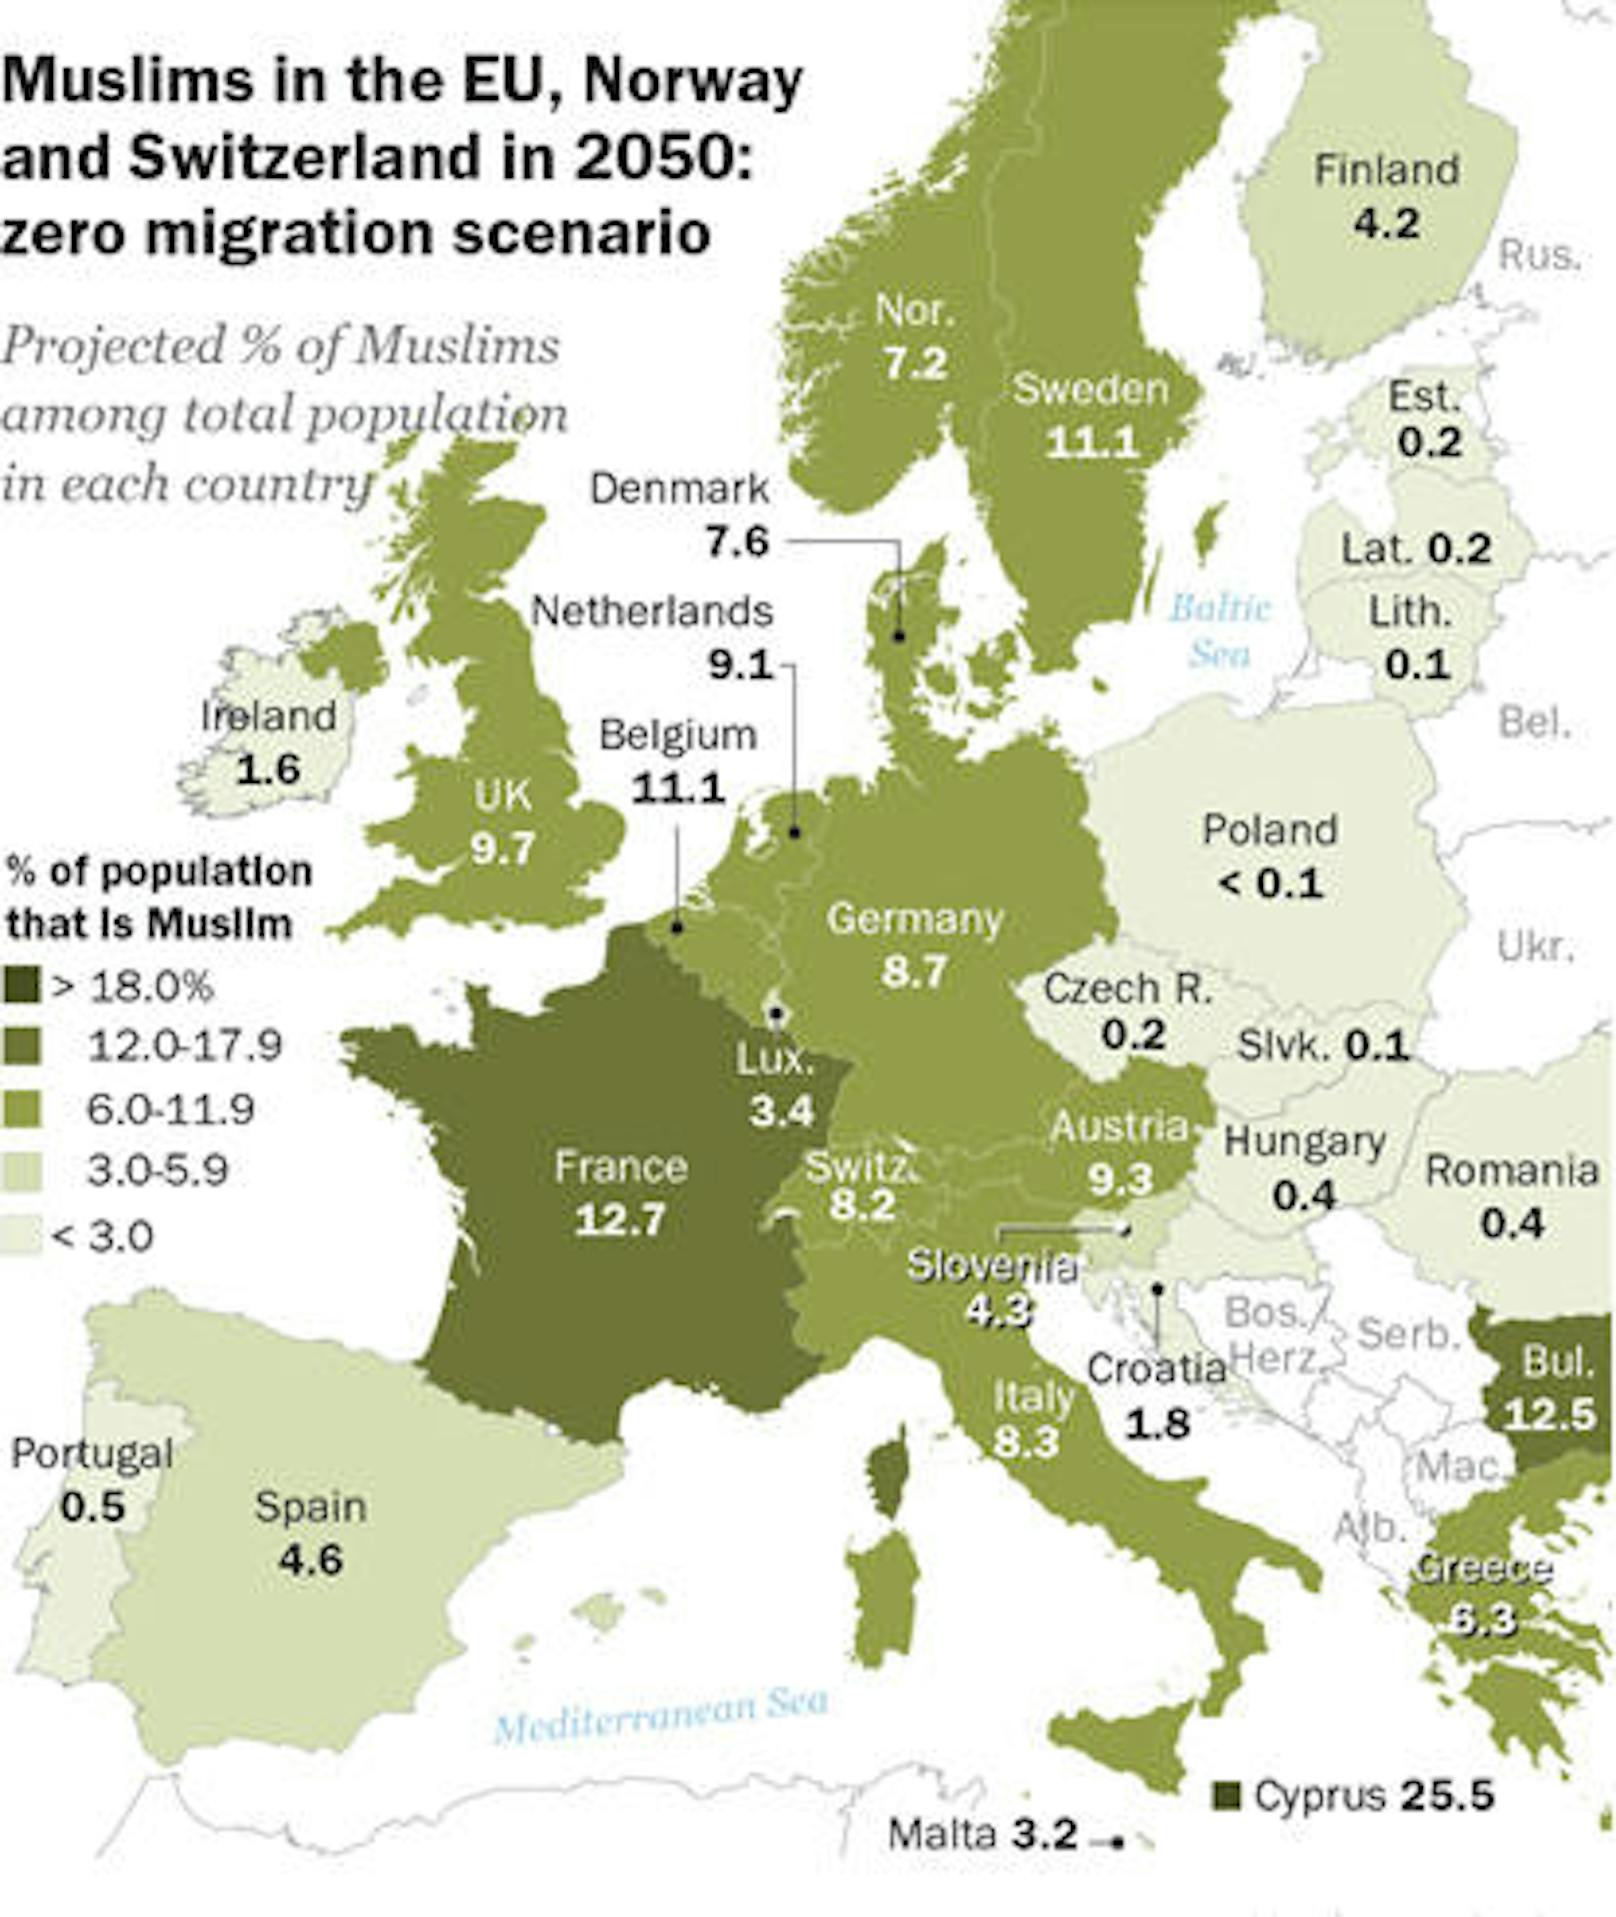 Der Anteil soll demnach bis 2050 auf durchschnittlich 7,4 Prozent anwachsen, selbst wenn keine Migration mehr stattfinden würde.